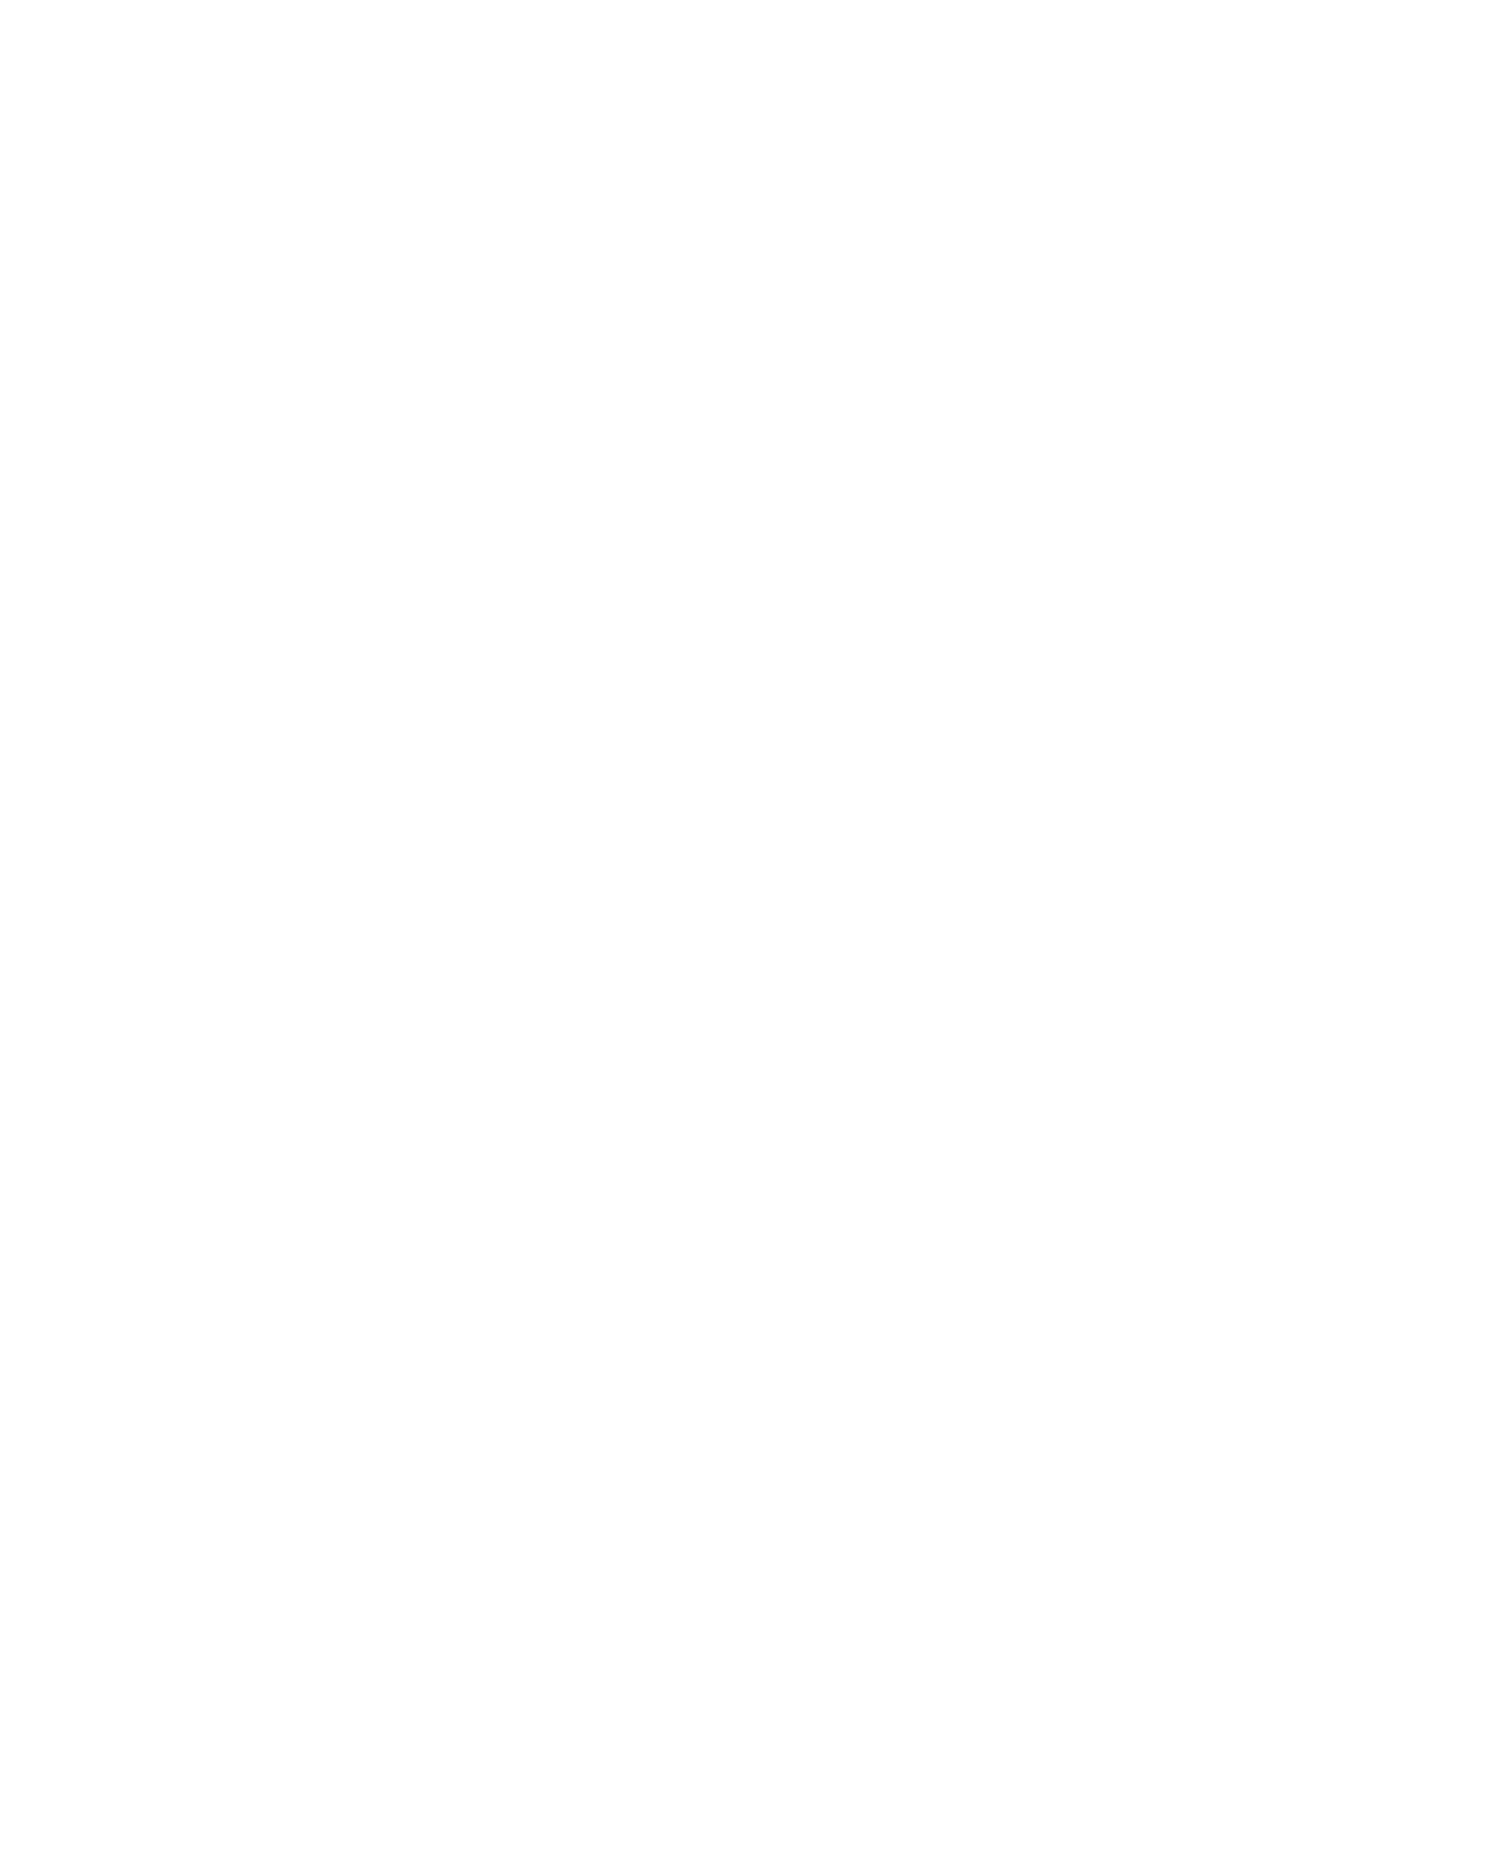 www.chapter.fi